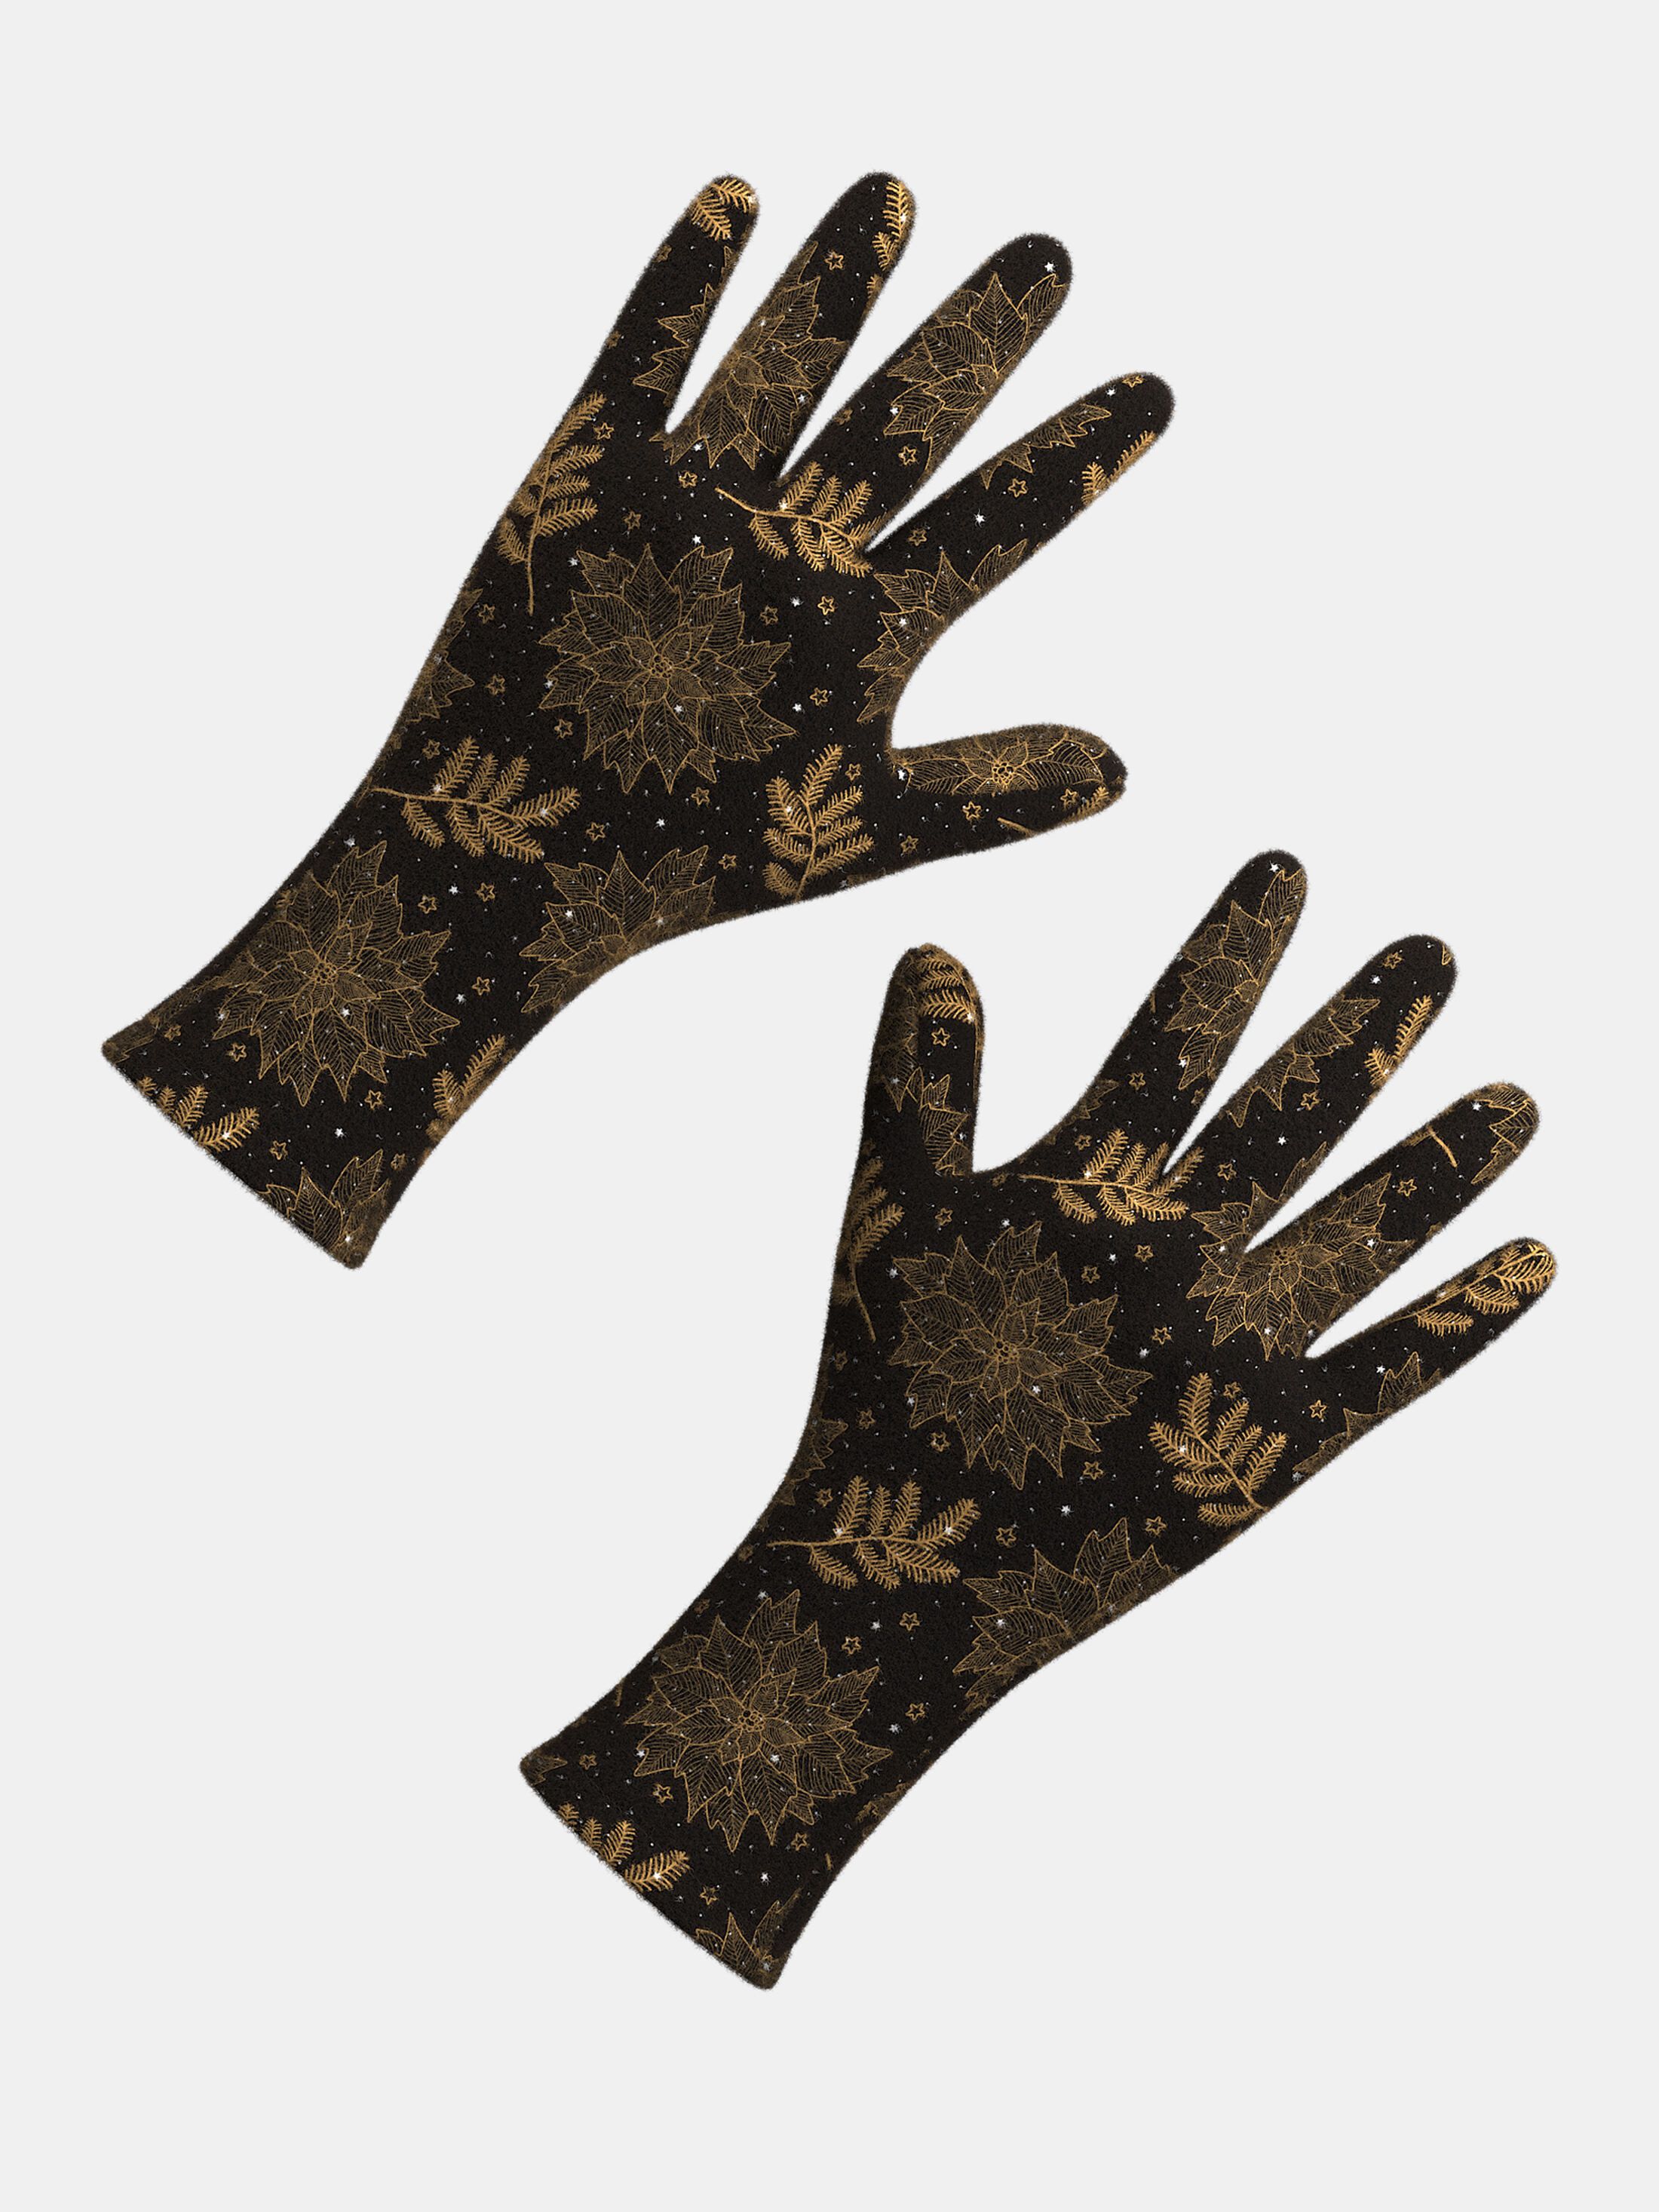 bespoke gloves